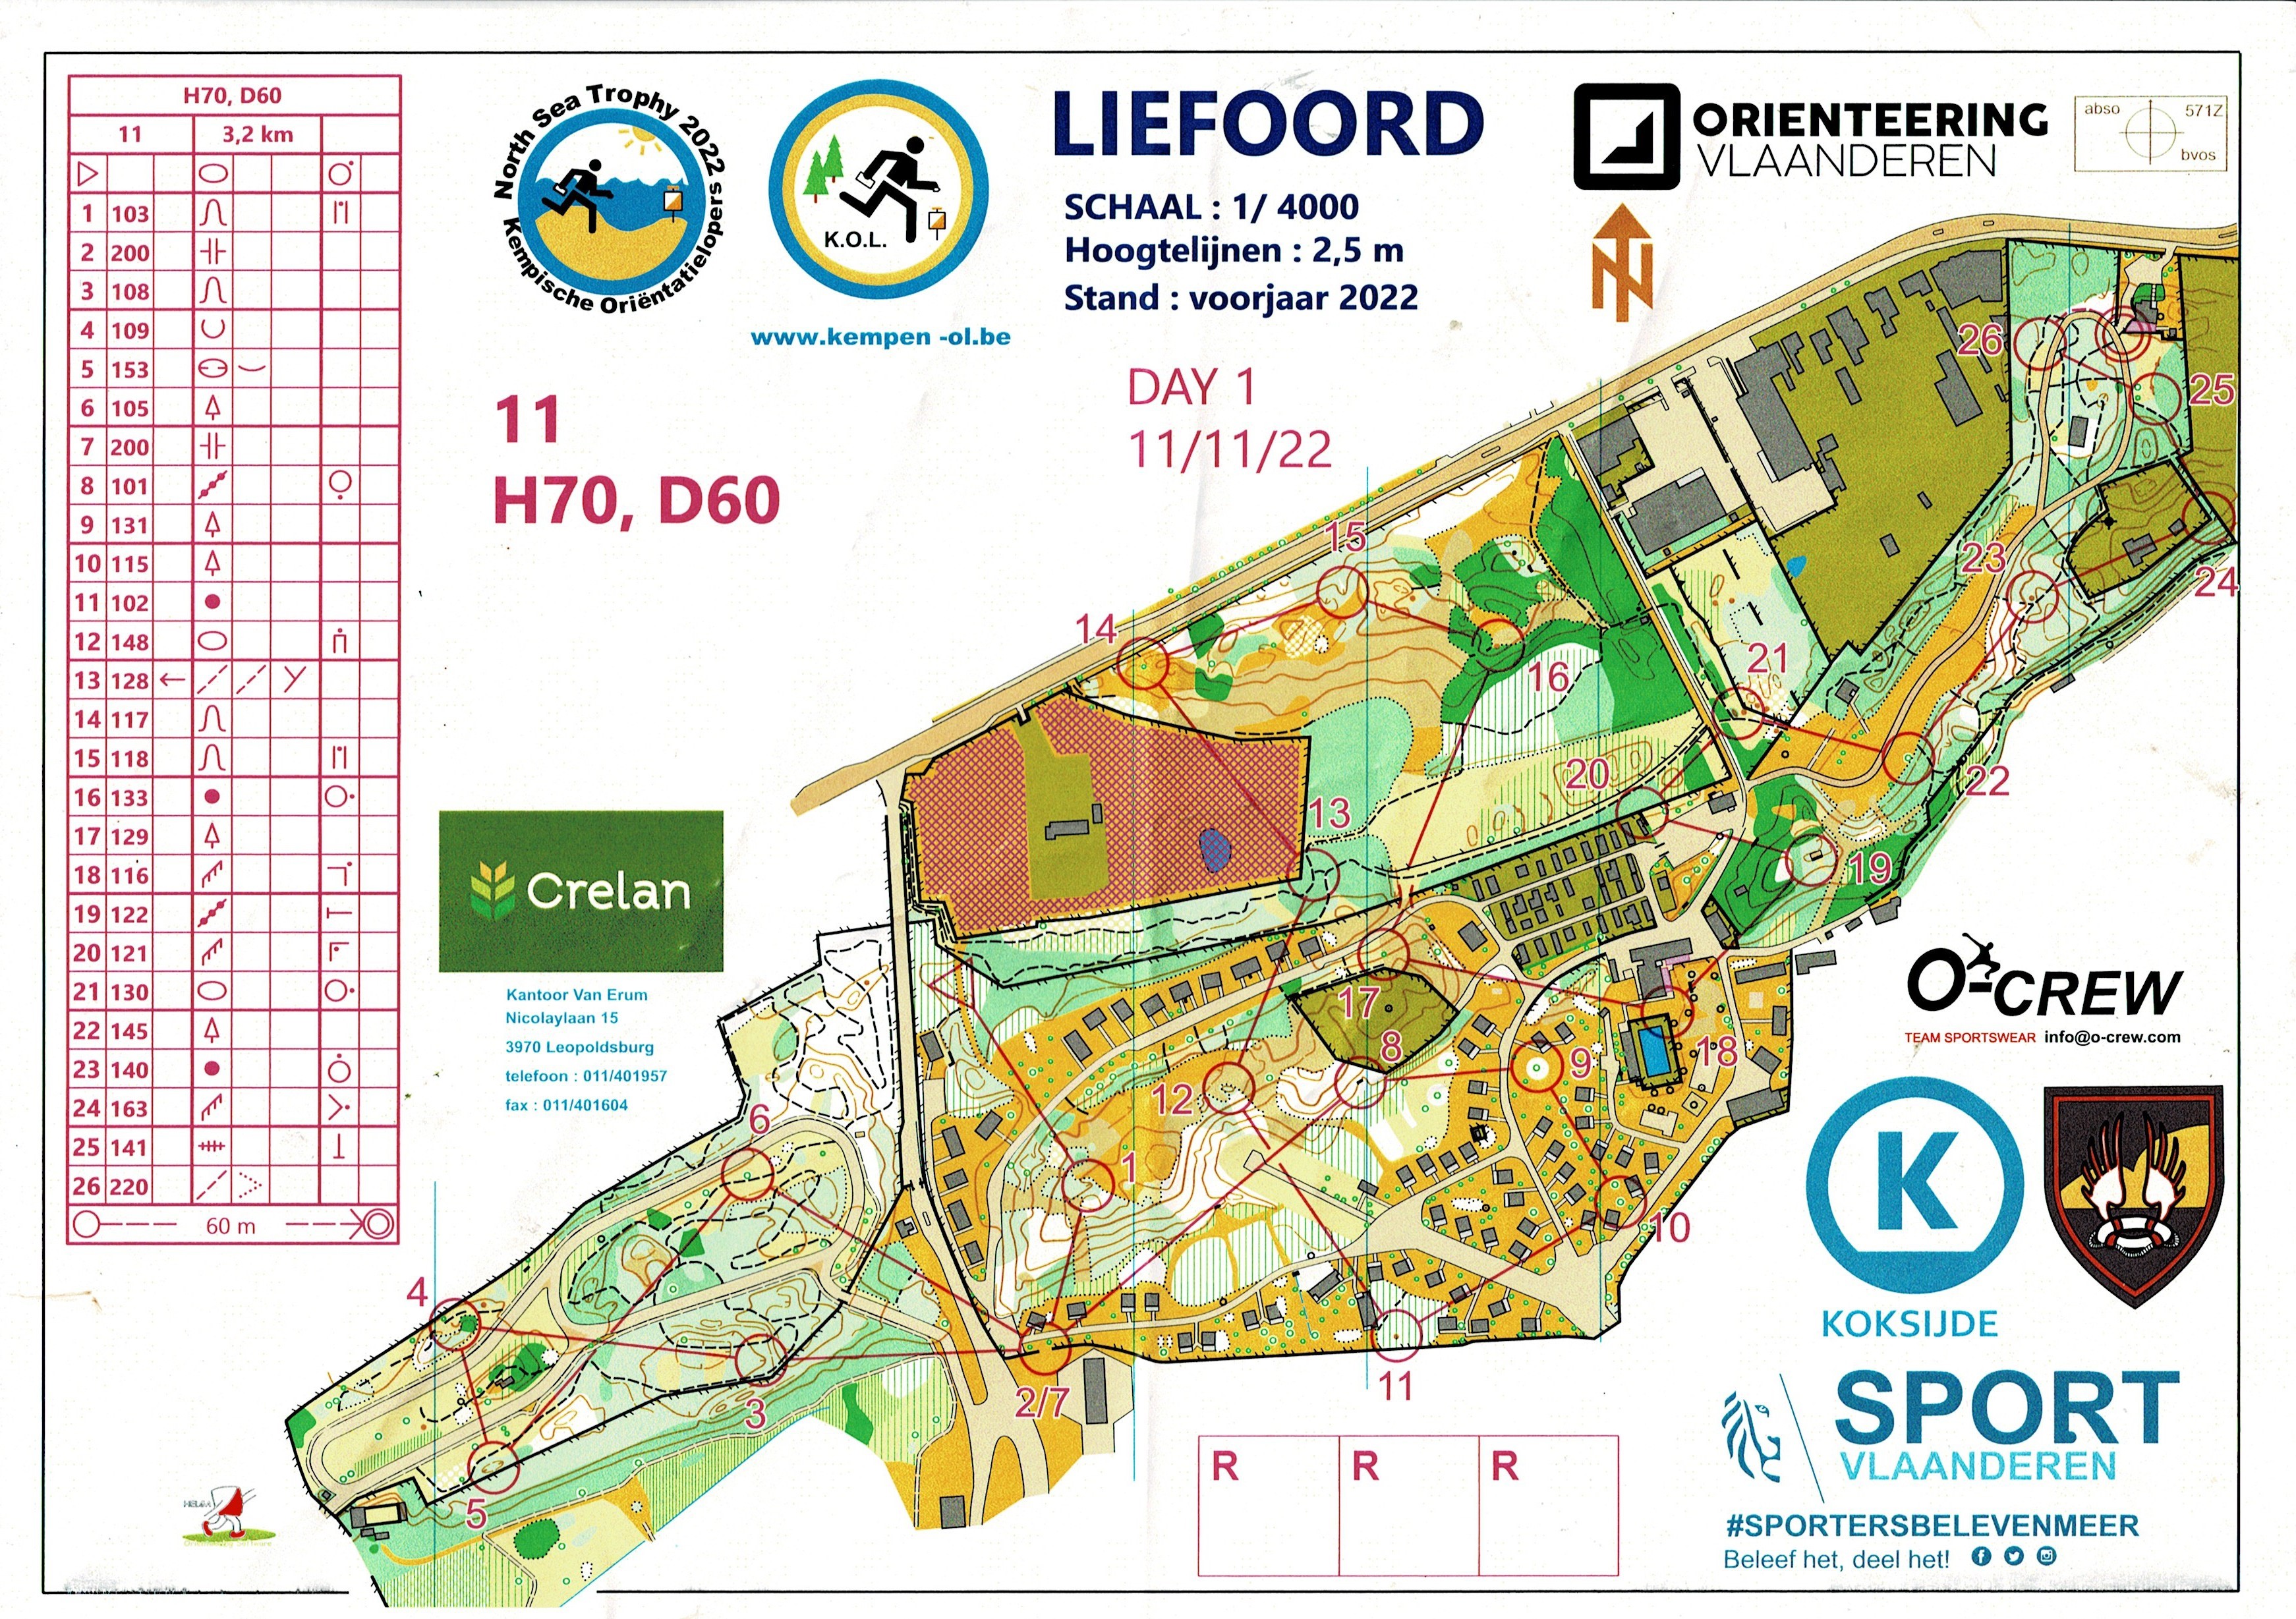 Liefoord (12-11-2022)